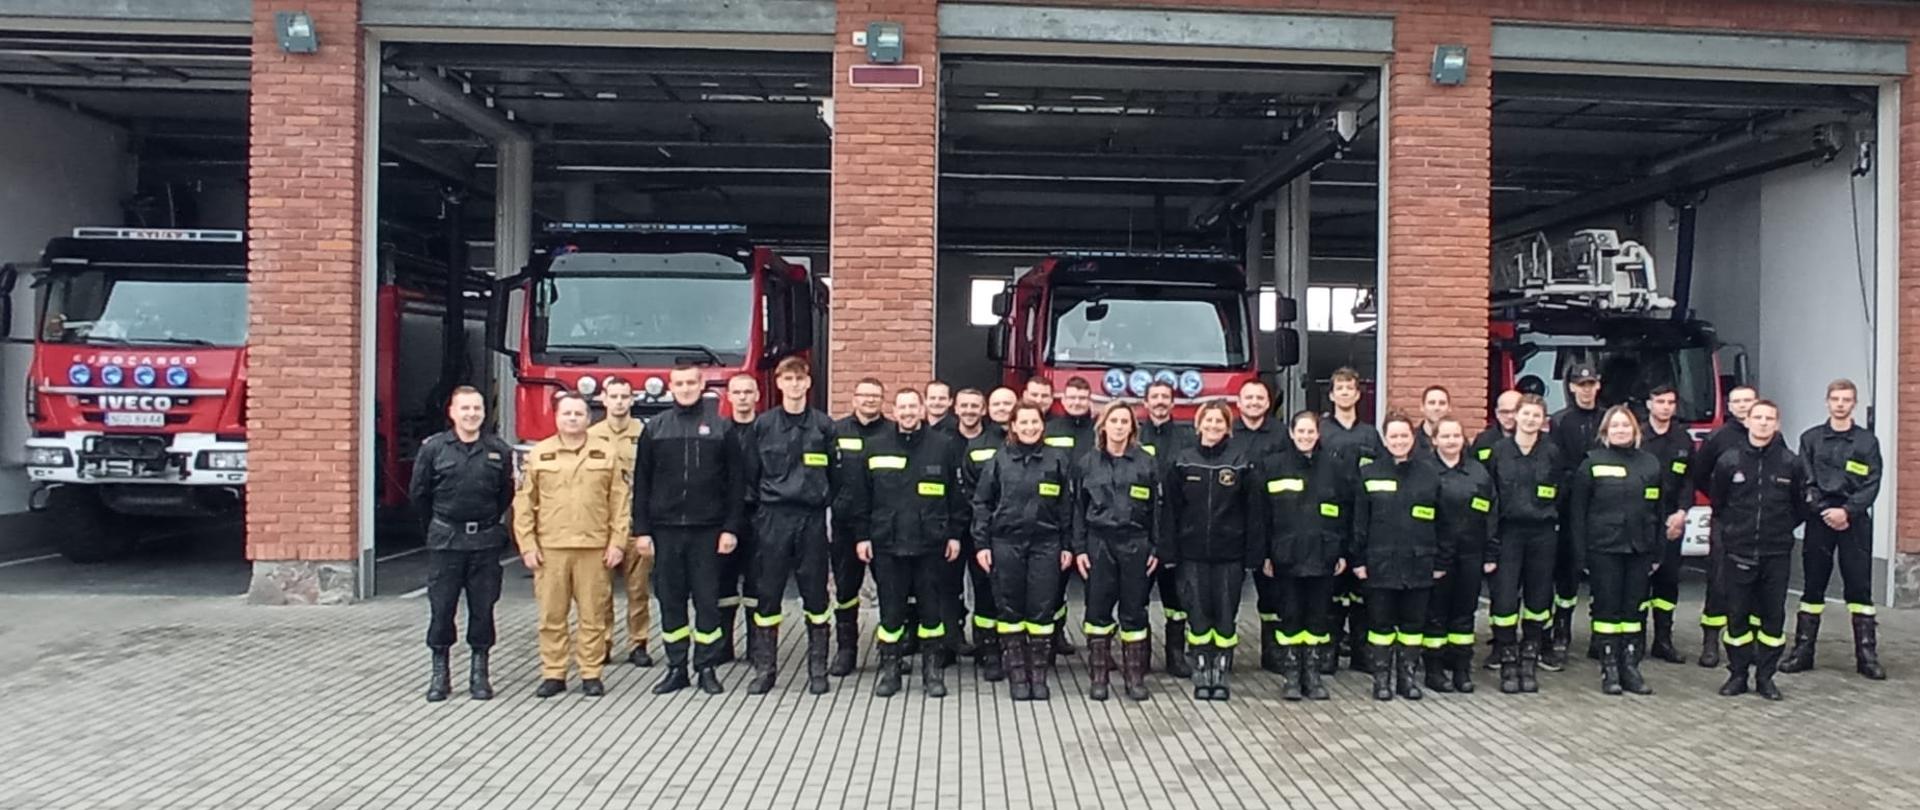 Zdjęcie przedstawia uczestników szkolenia podstawowego strażaka ratownika Ochotniczych Straży Pożarnych, realizowanego w Komedzie Powiatowej Państwowej Straży Pożarnej w Gołdapi wspólnie z komisją egzaminacyjną, na tle pojazdów pożarniczych zlokalizowanych w garażach strażnicy 